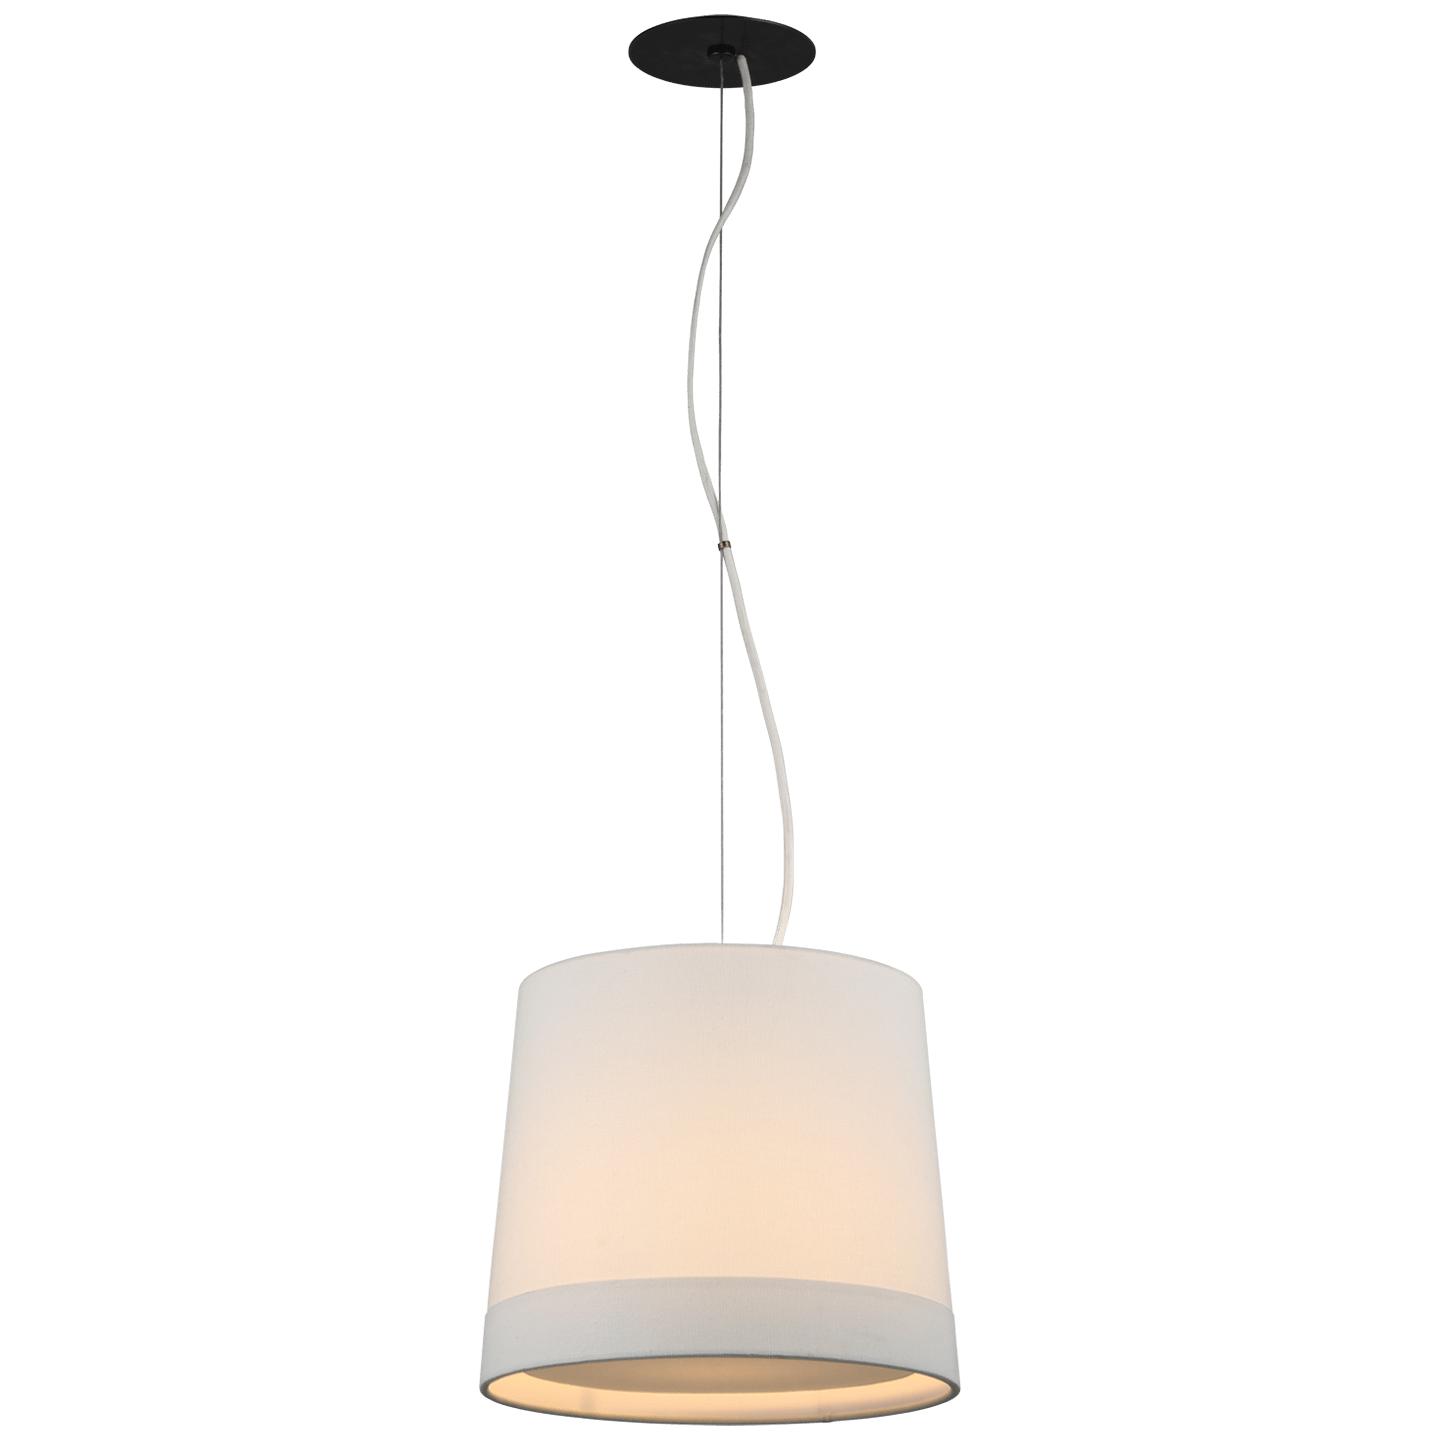 Купить Подвесной светильник Sash Small Hanging Shade в интернет-магазине roooms.ru